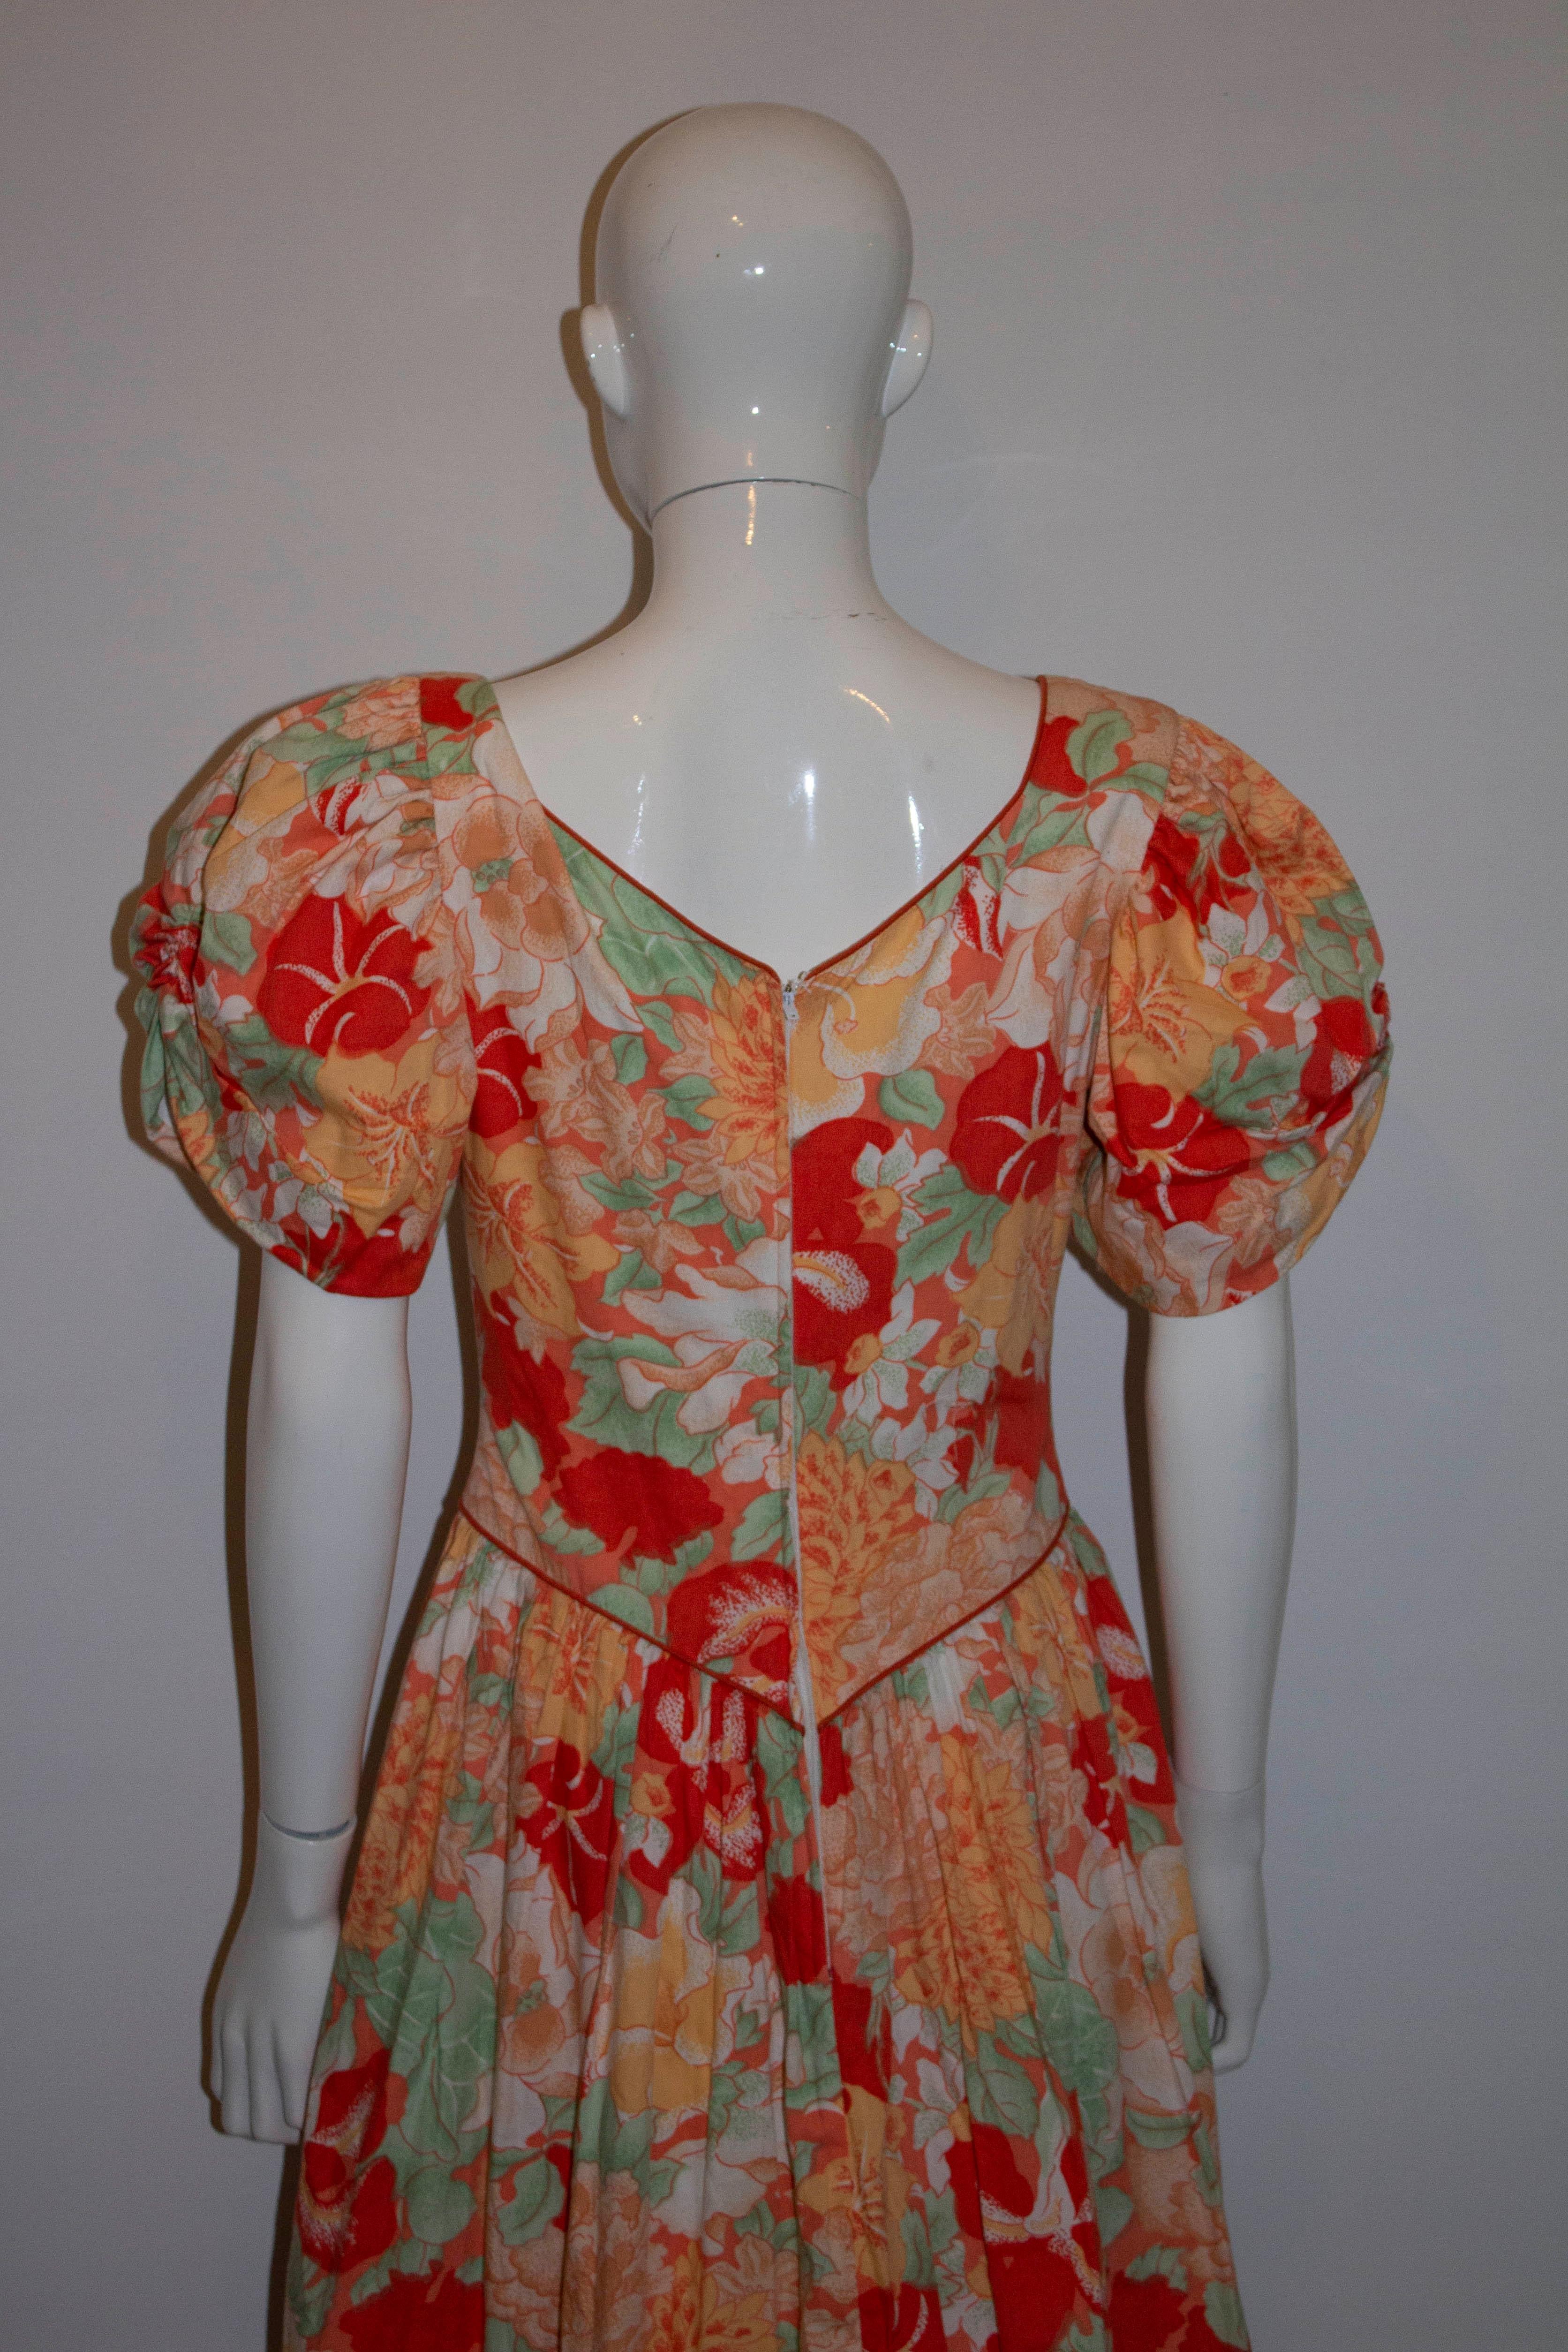 Une magnifique robe florale vintage en coton dans un mélange d'orange, de rouge et de vert. La robe a des manches bouffantes et un décolleté en forme de cœur avec une fermeture éclair centrale au dos.  Il est doublé en coton et possède une jupe